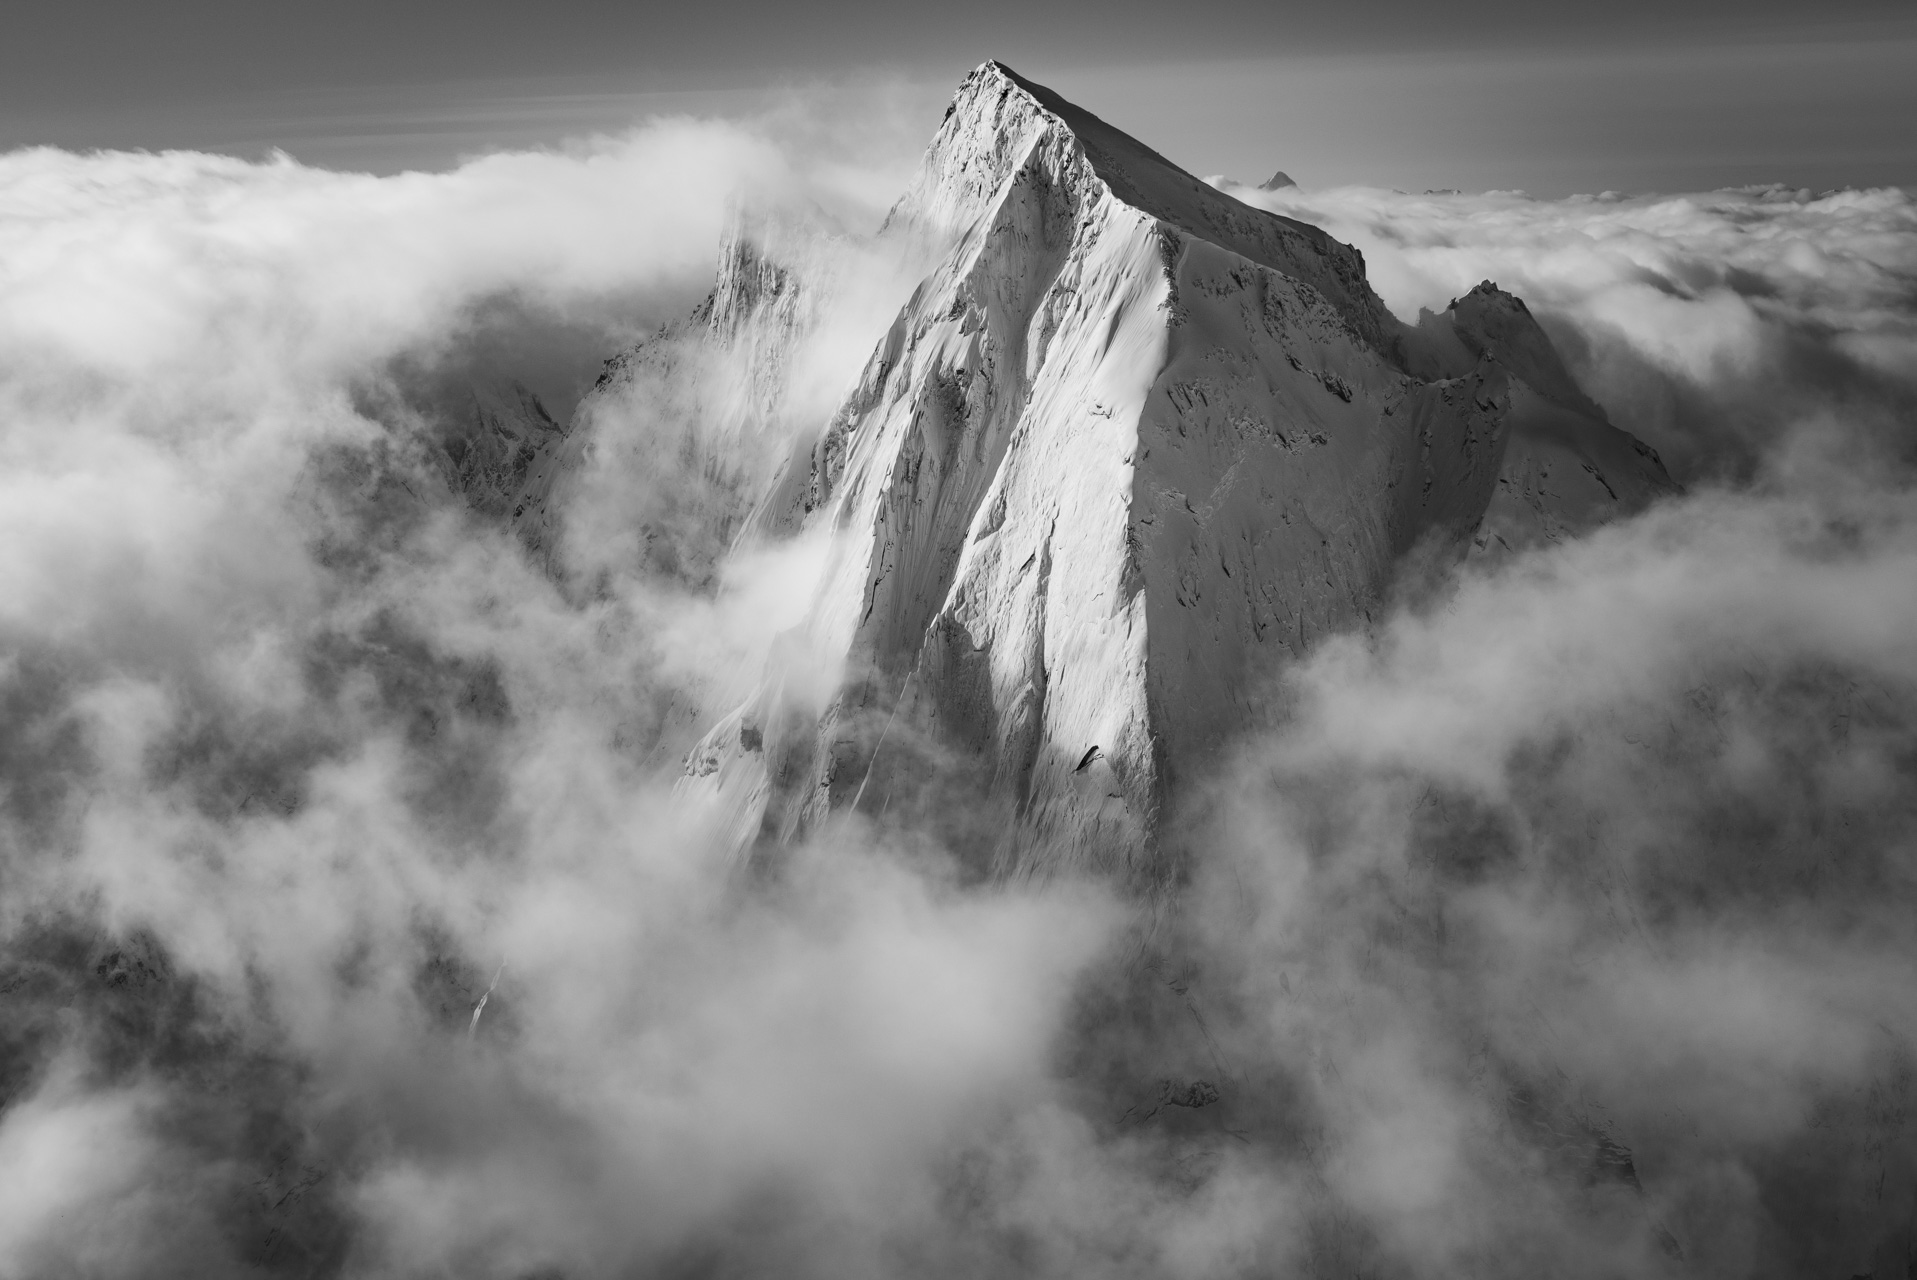 Suisse Engadine - Piz Cengalo photo - Image noir et blanc Alpes suisses vue du ciel